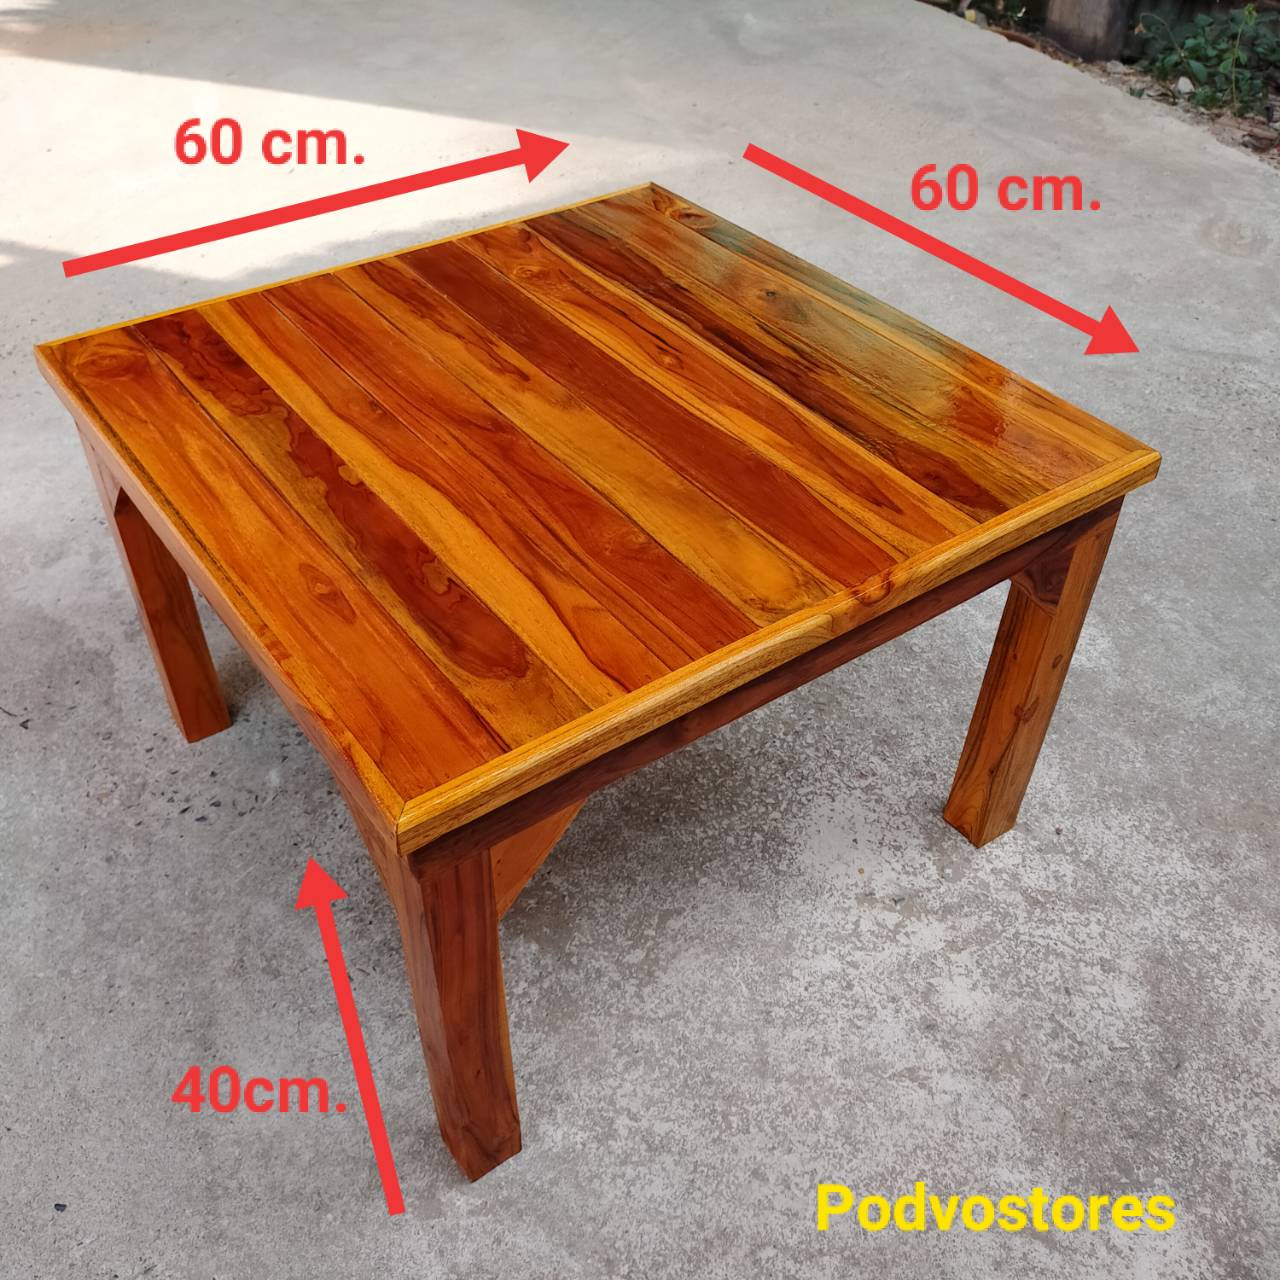 โต๊ะไม้สัก โต๊ะญี่ปุ่น (กว้าง 60 ยาว 60 สูง 40 cm.) ทำจากไม้สัก ลงสีเคลือบแลคเกอร์ โต๊ะวางของ ที่วางของ โต๊ะตัวเตี้ย โต๊ะปิ๊กนิก โต๊ะตัวเล็ก